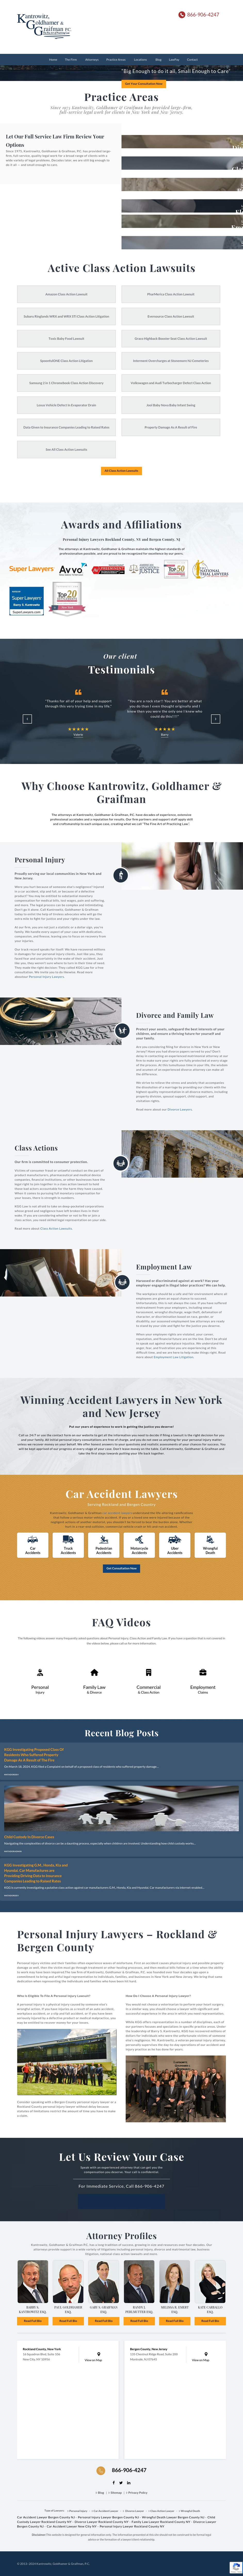 Kantrowitz, Goldhamer & Graifman, P.C. - Chestnut Ridge NY Lawyers